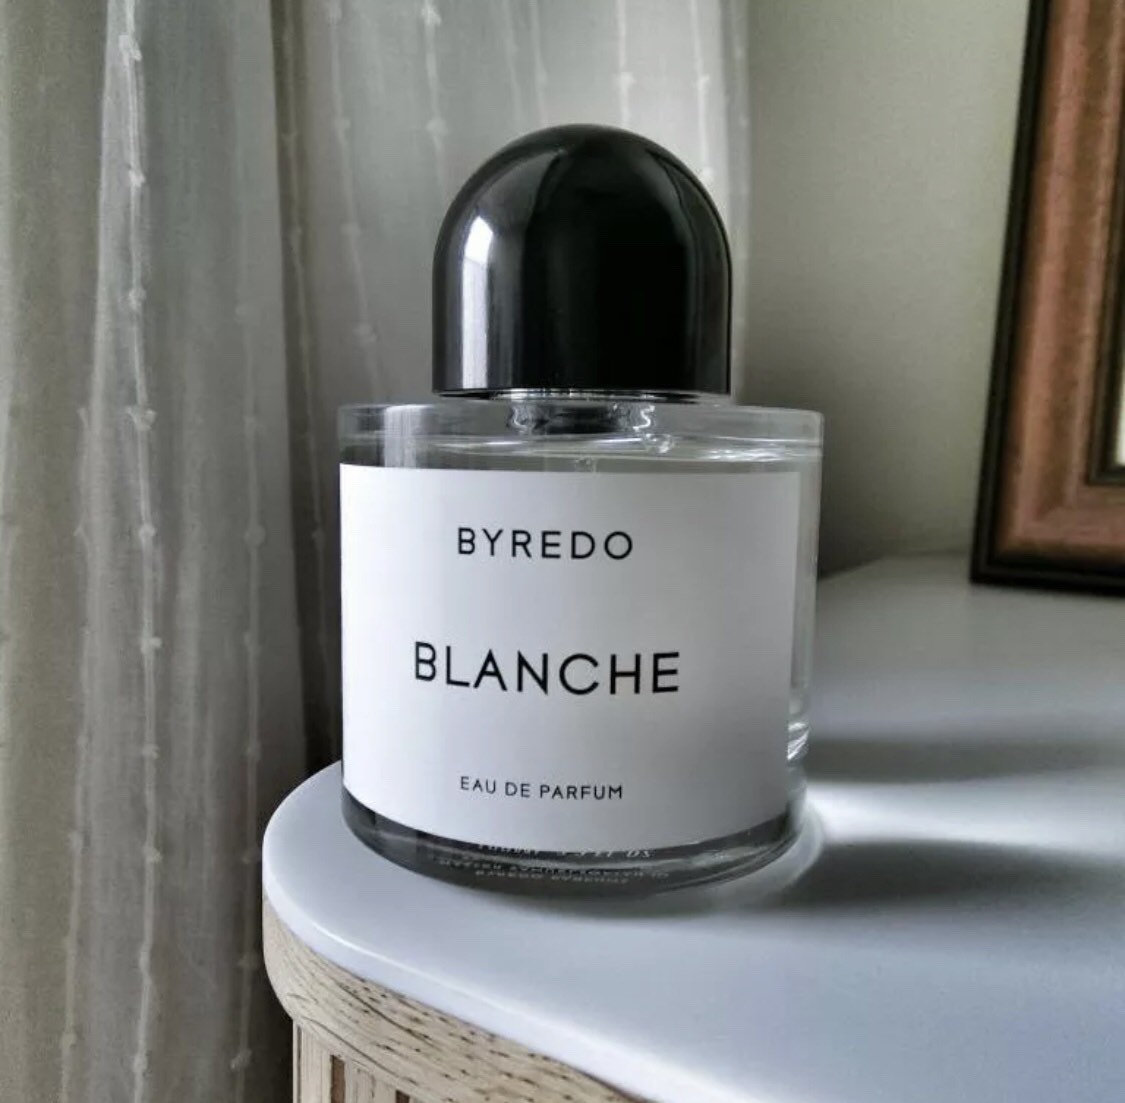 Byredo Blanche 100 ml 3.4 o.z. edp perfume | Etsy